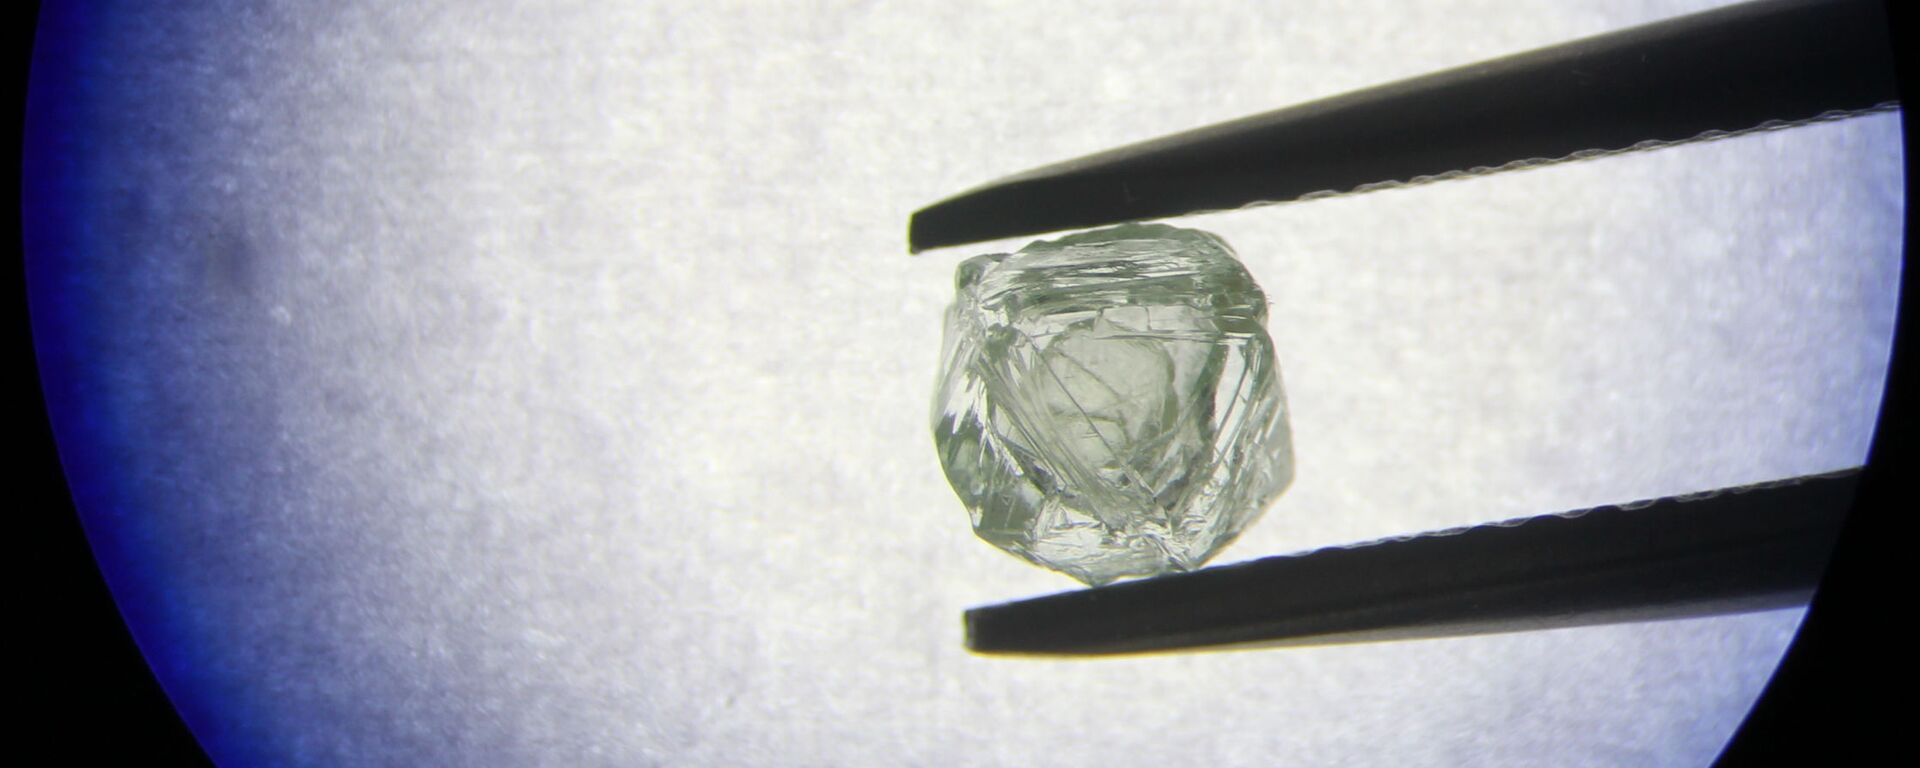 El diamante matrioshka extraído por la compañía rusa Alrosa - Sputnik Mundo, 1920, 21.11.2019